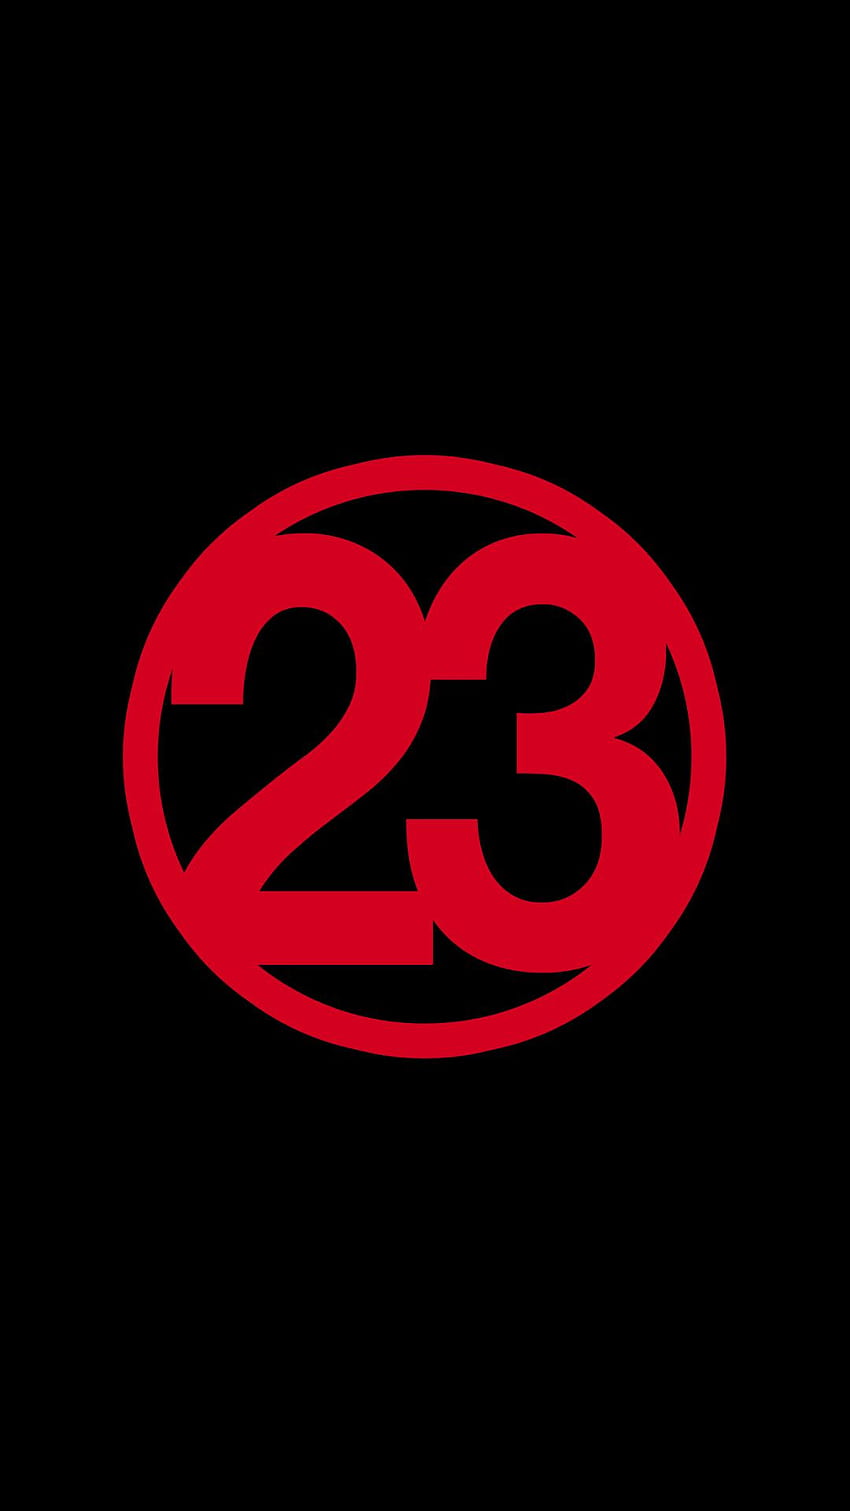 Jordan 23, red jordan logo HD phone wallpaper